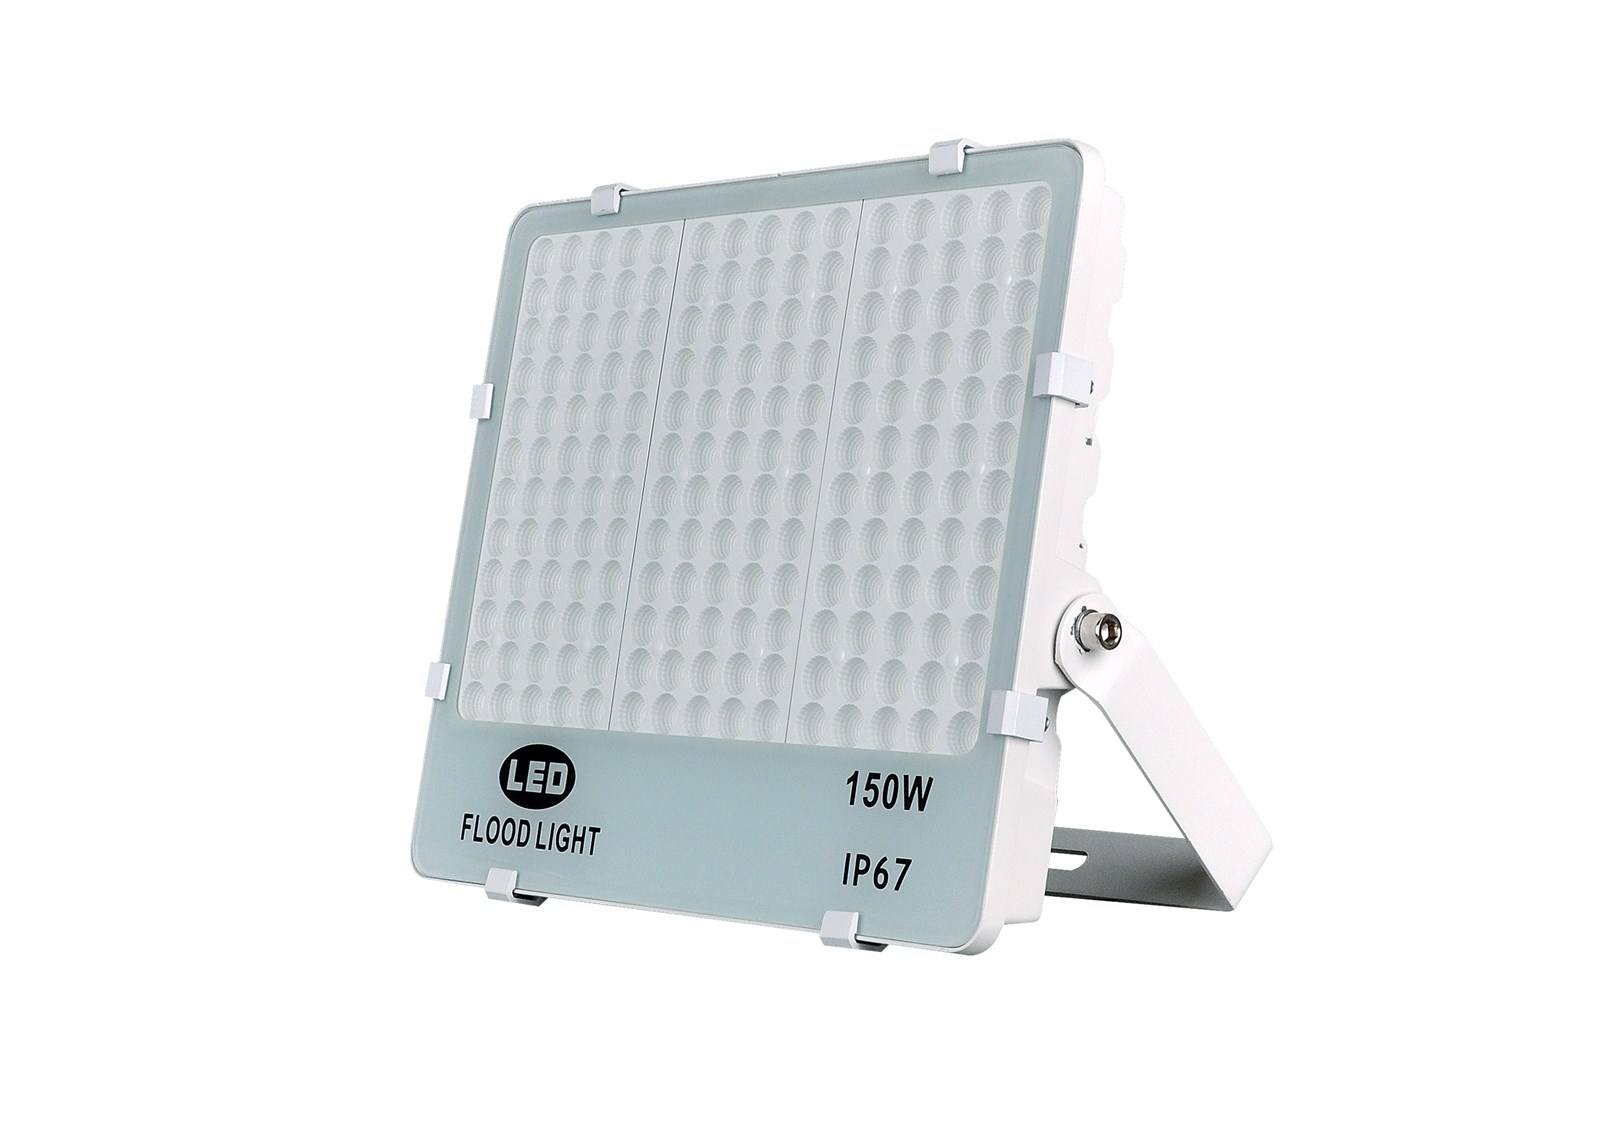 LED Flood Light IP67 Waterproof & Dustproof